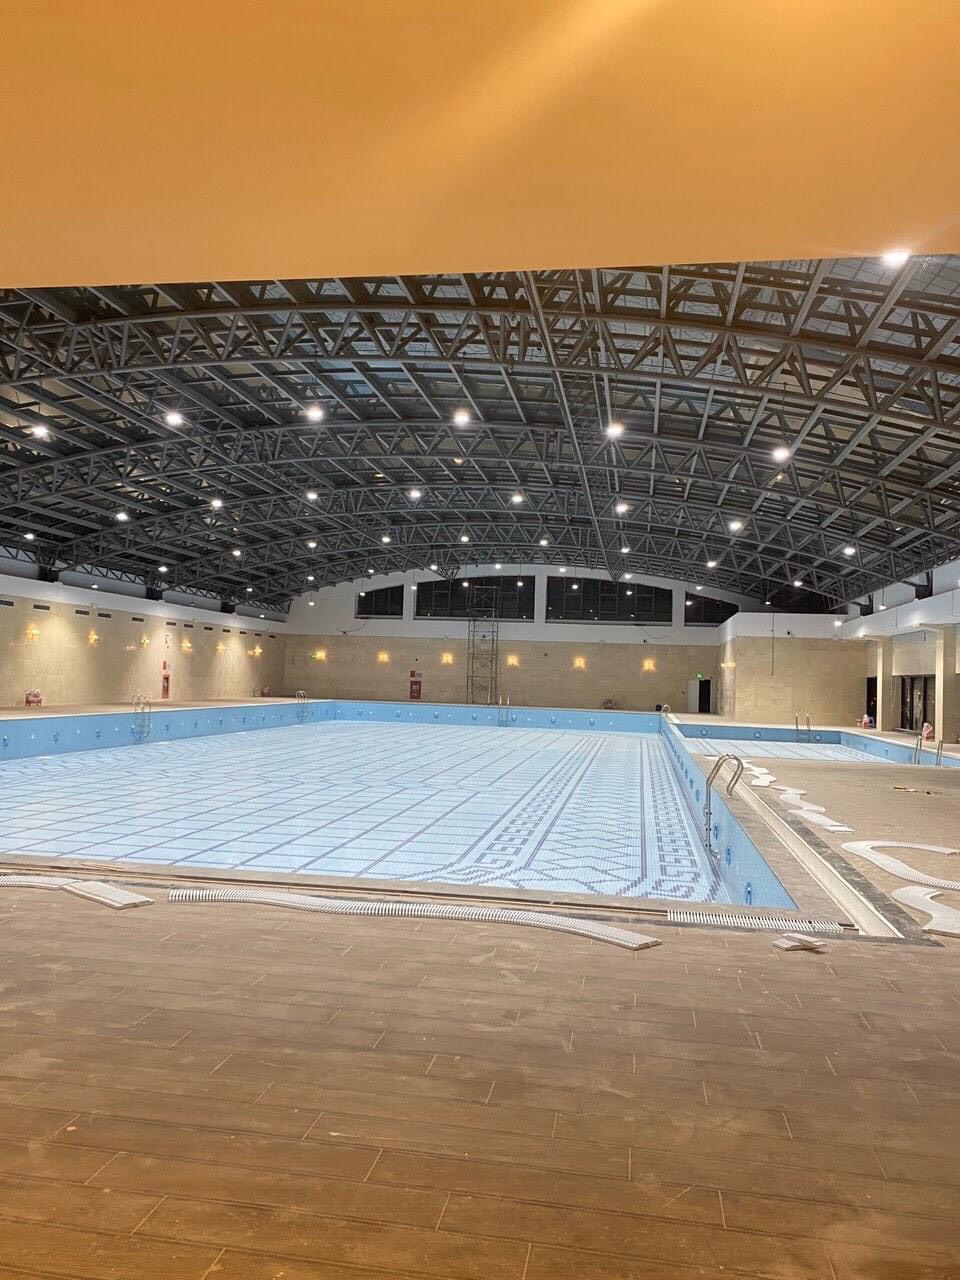 Bể bơi 4 mùa trên tầng 3 của Vincom Mega Mall đang dần hoàn thiện để phục vụ cư dân.